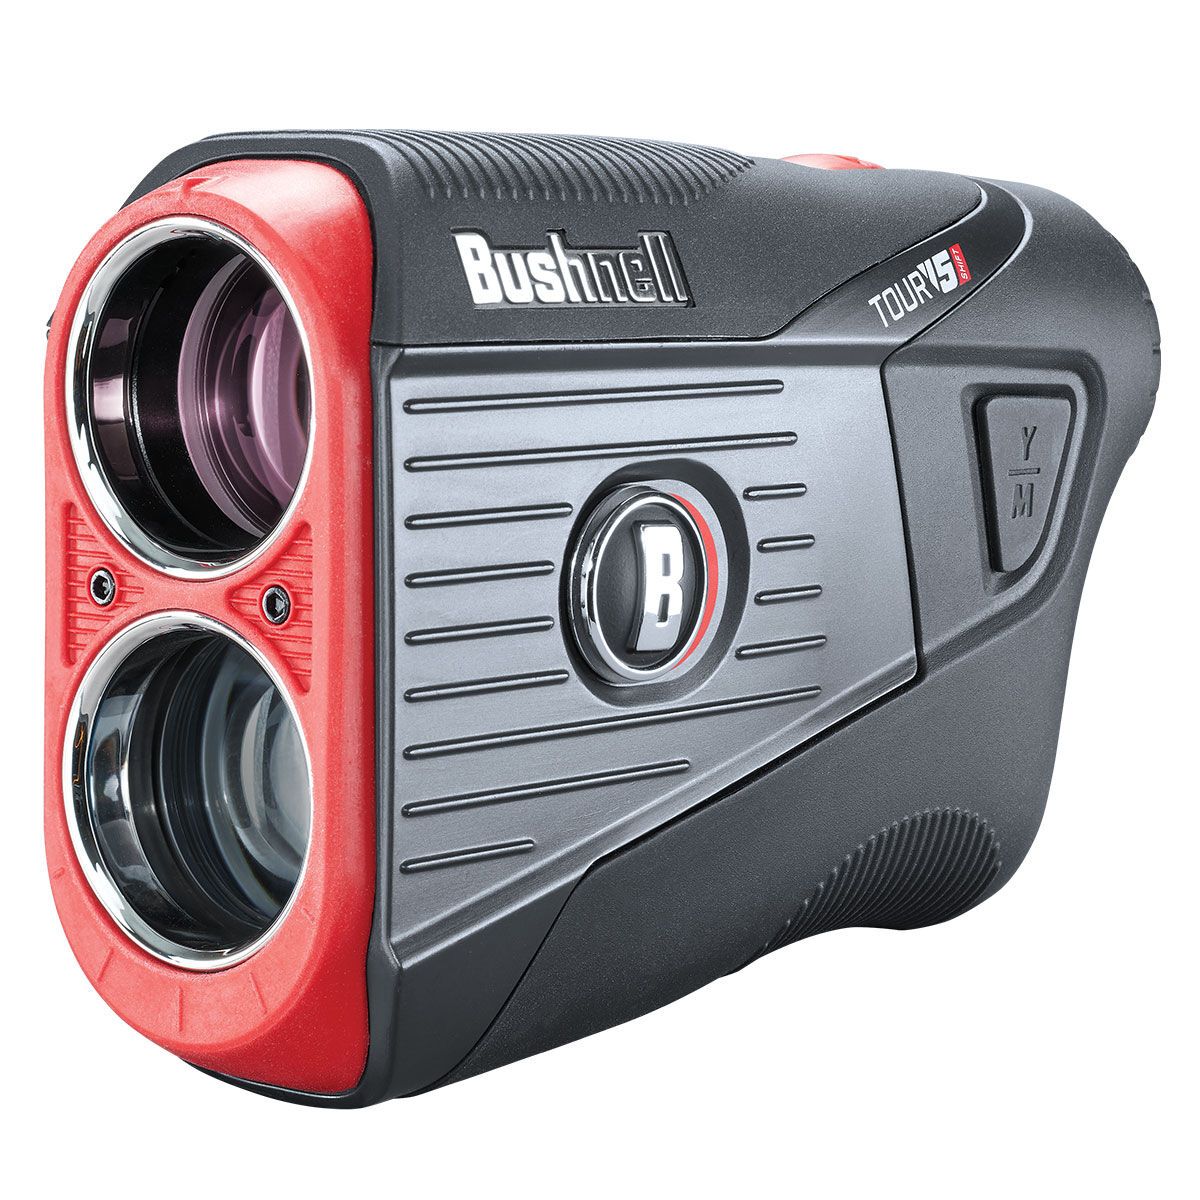 Bushnell Black and Orange TOUR V5 Shift Slim Golf Rangefinder 2021| American Golf, One Size